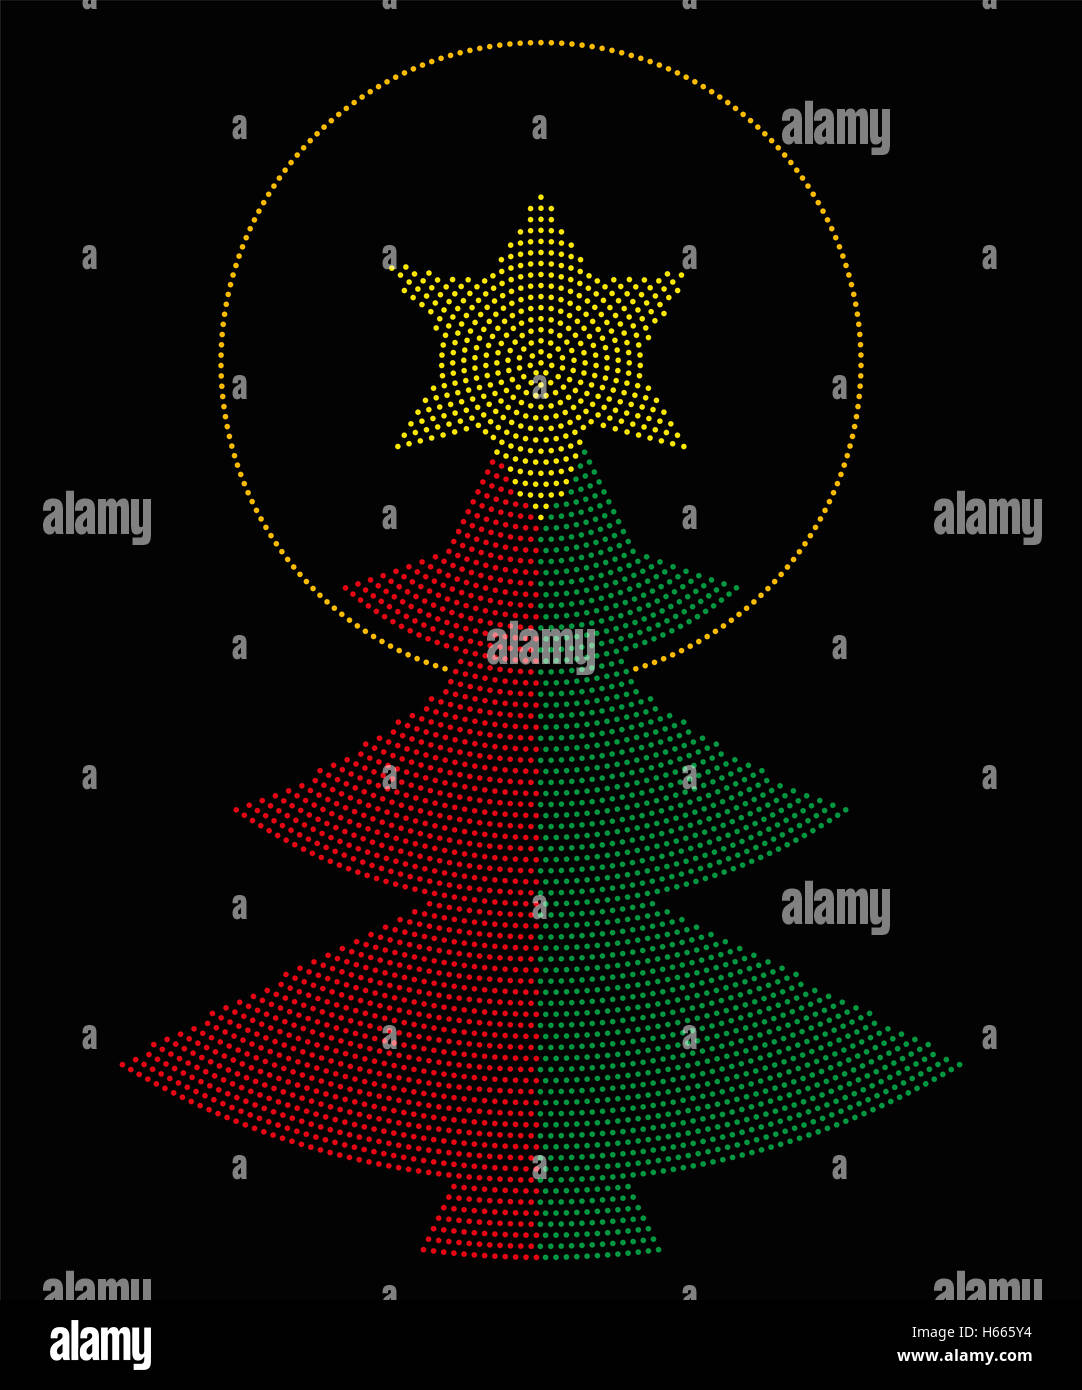 Weihnachtsbaum-Symbol radial Punktmuster. Einzigen Baum rot-grüne Farbe, eine gelbe sechszackigen Stern auf der Spitze mit einem Heiligenschein. Stockfoto